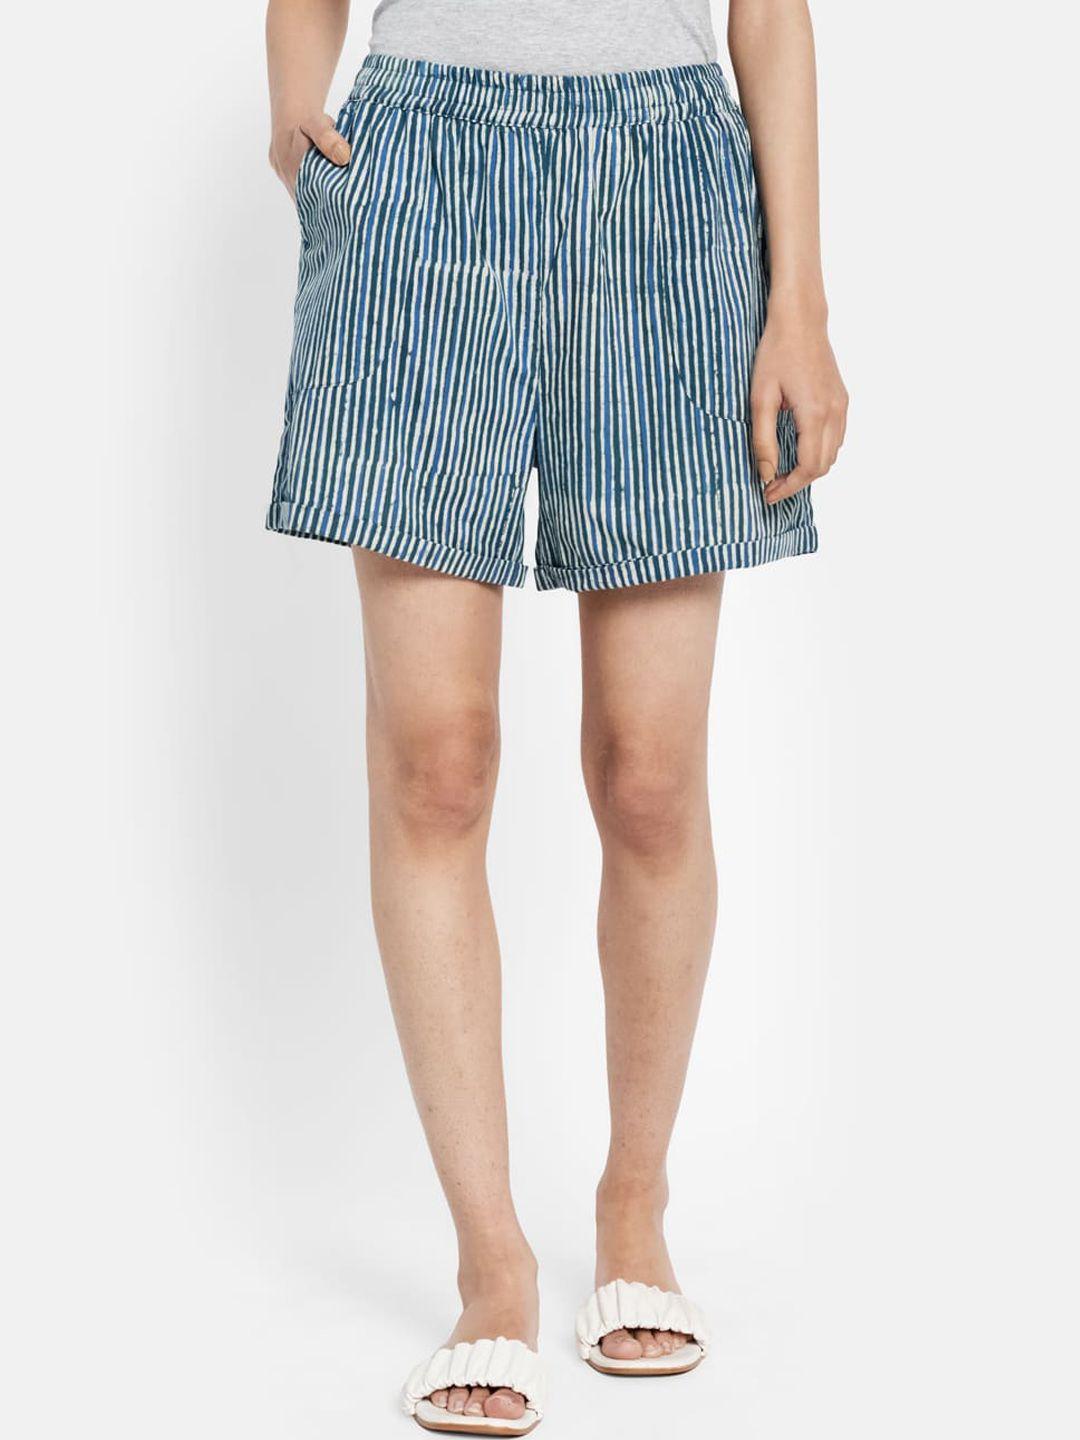 fabindia women blue striped cotton shorts